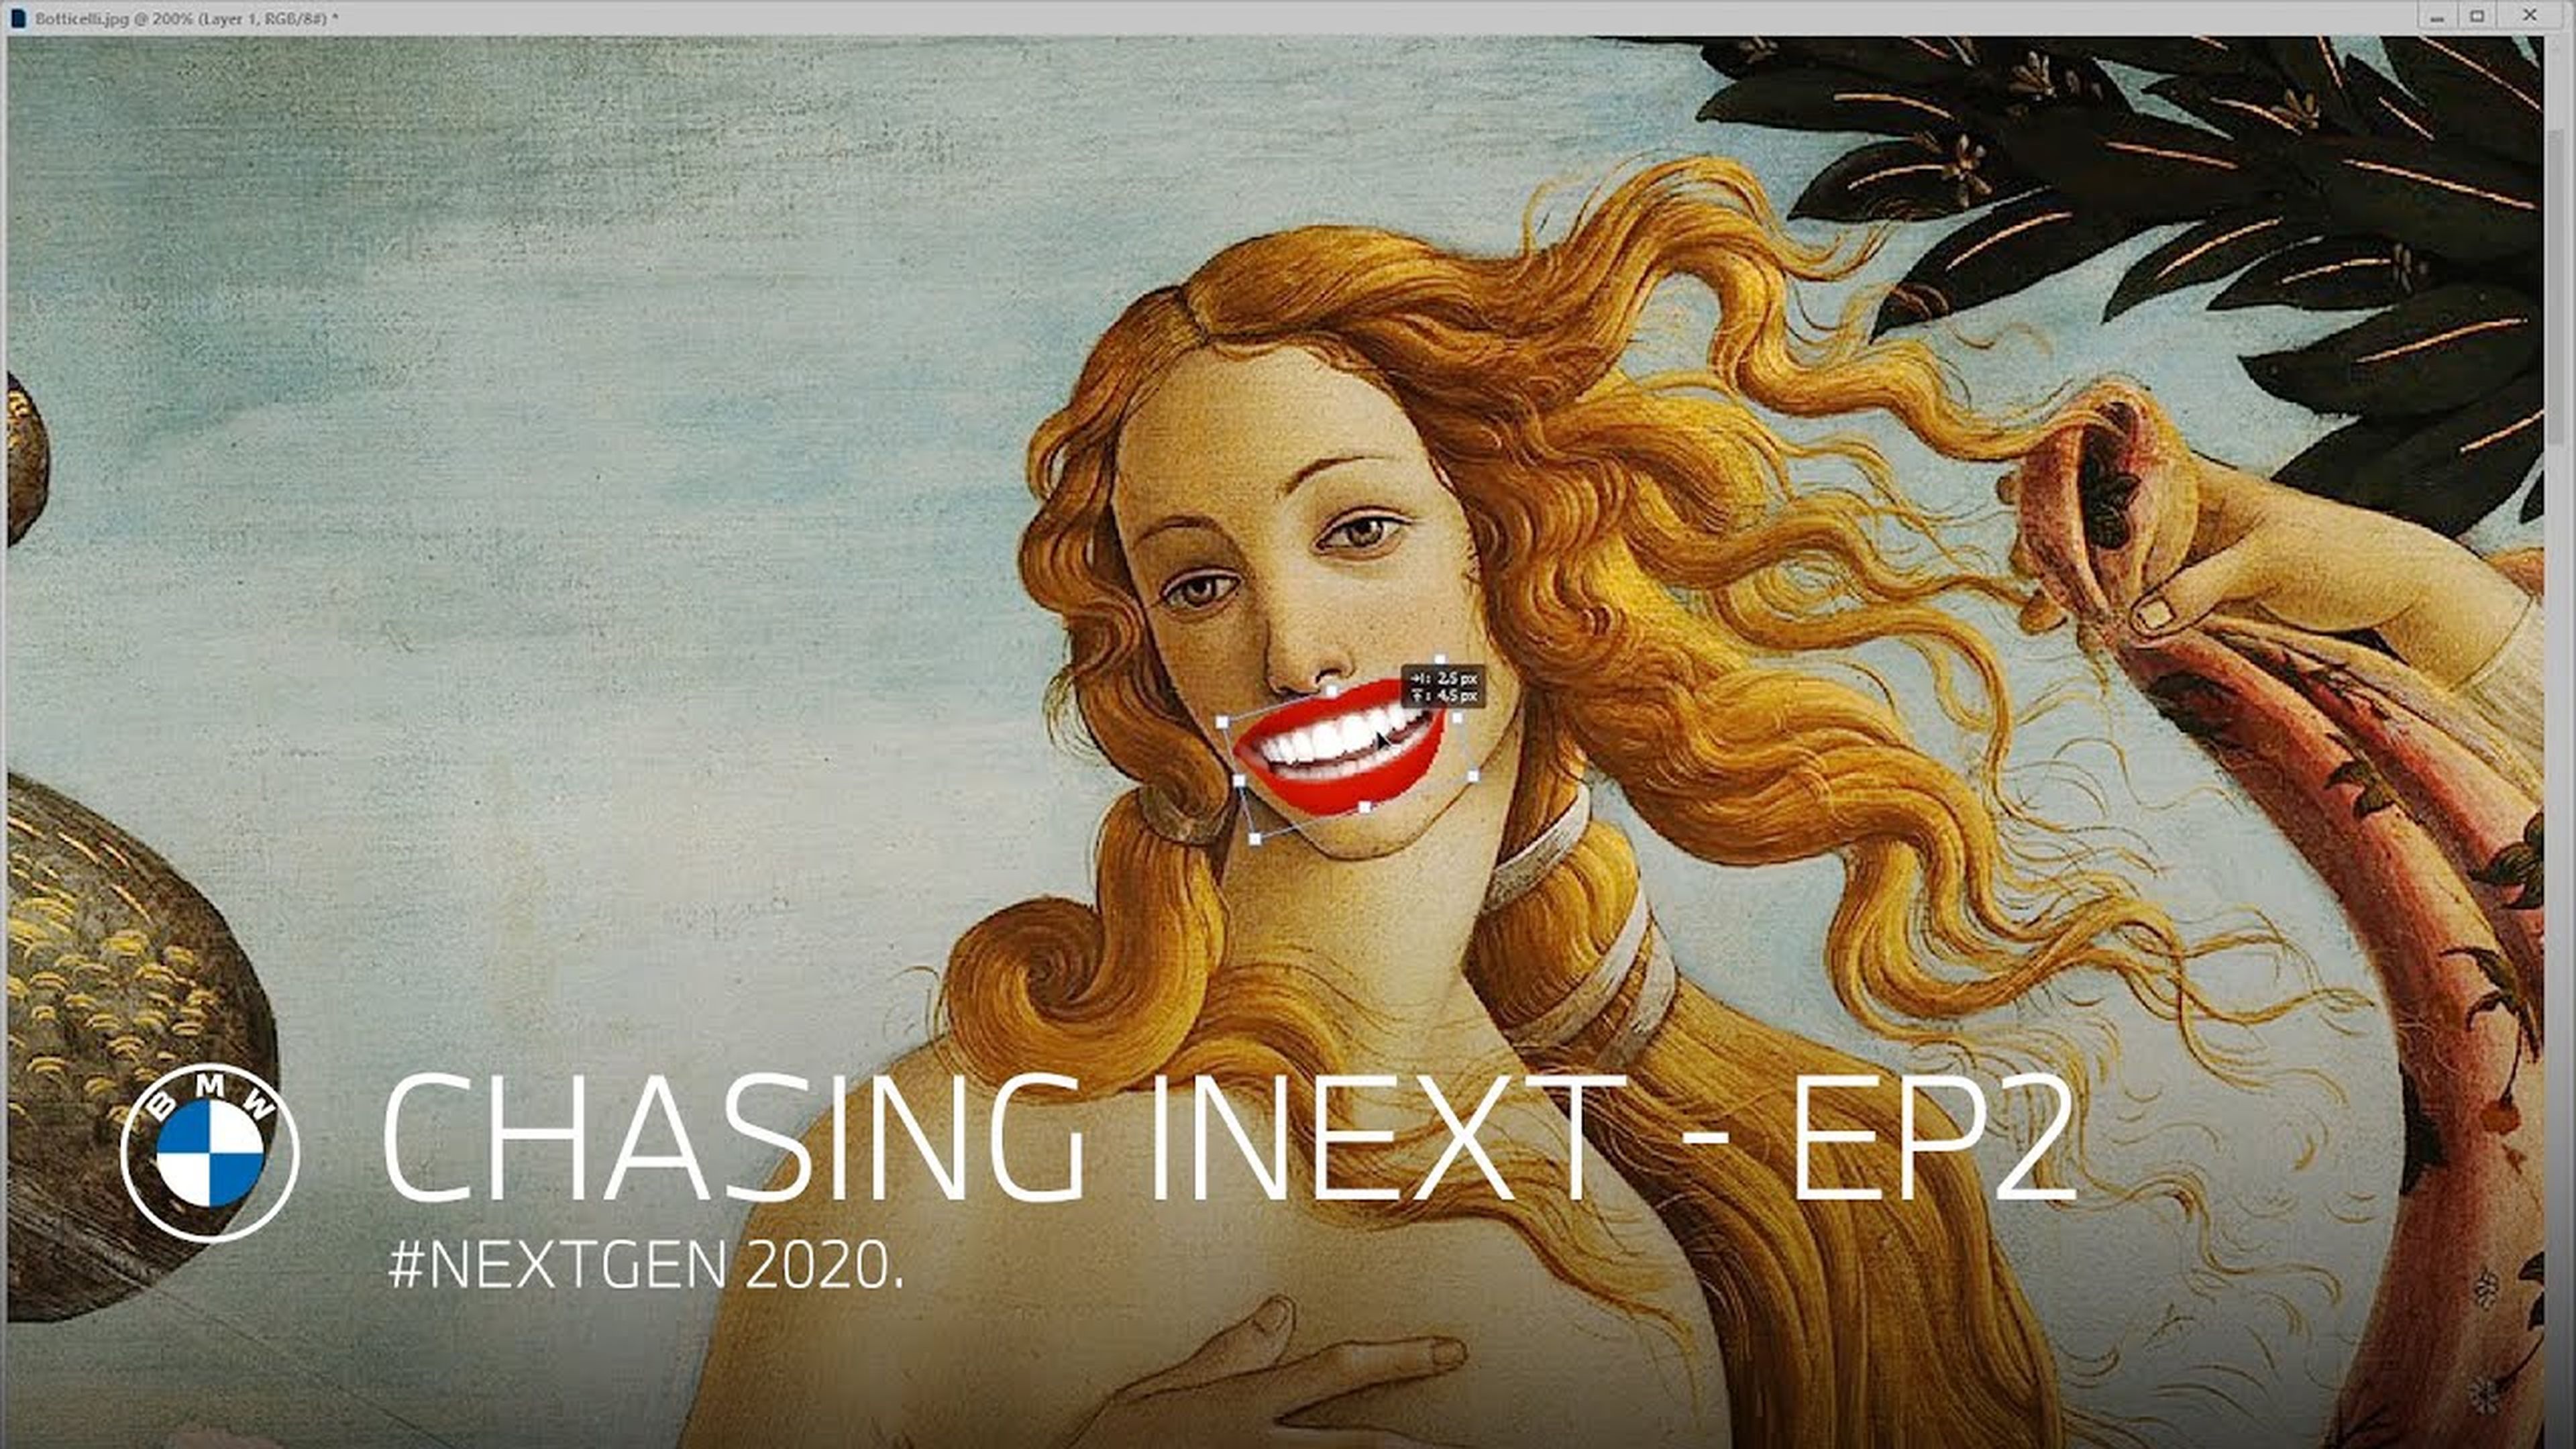 Chasing iNEXT - Episode 2 | #NEXTGen 2020.